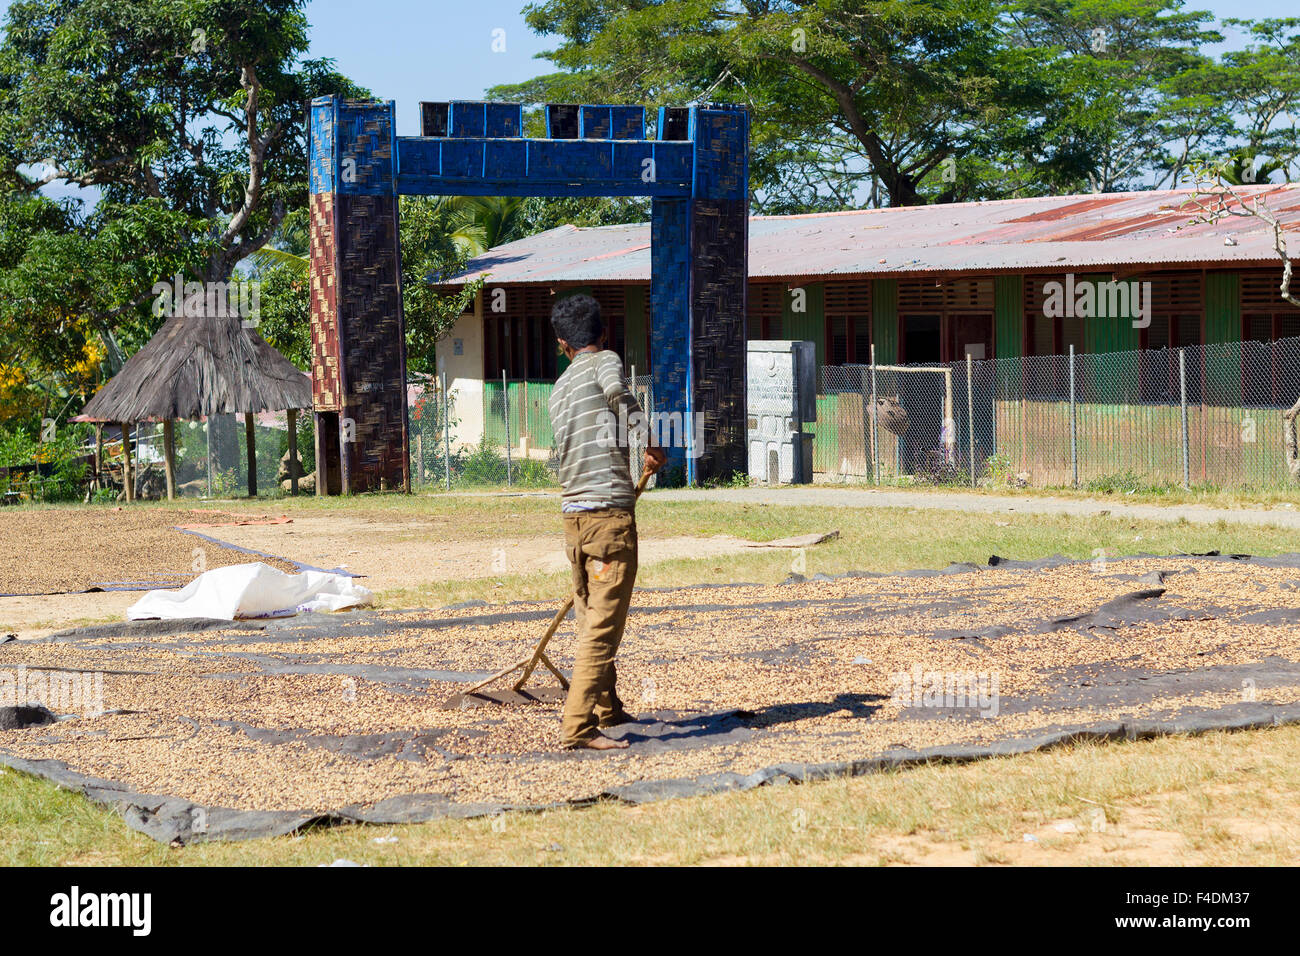 Liquica, Timor oriental - 22 juin 2012 : homme non identifié le séchage et le tri des baies de café rouge au Timor oriental Banque D'Images